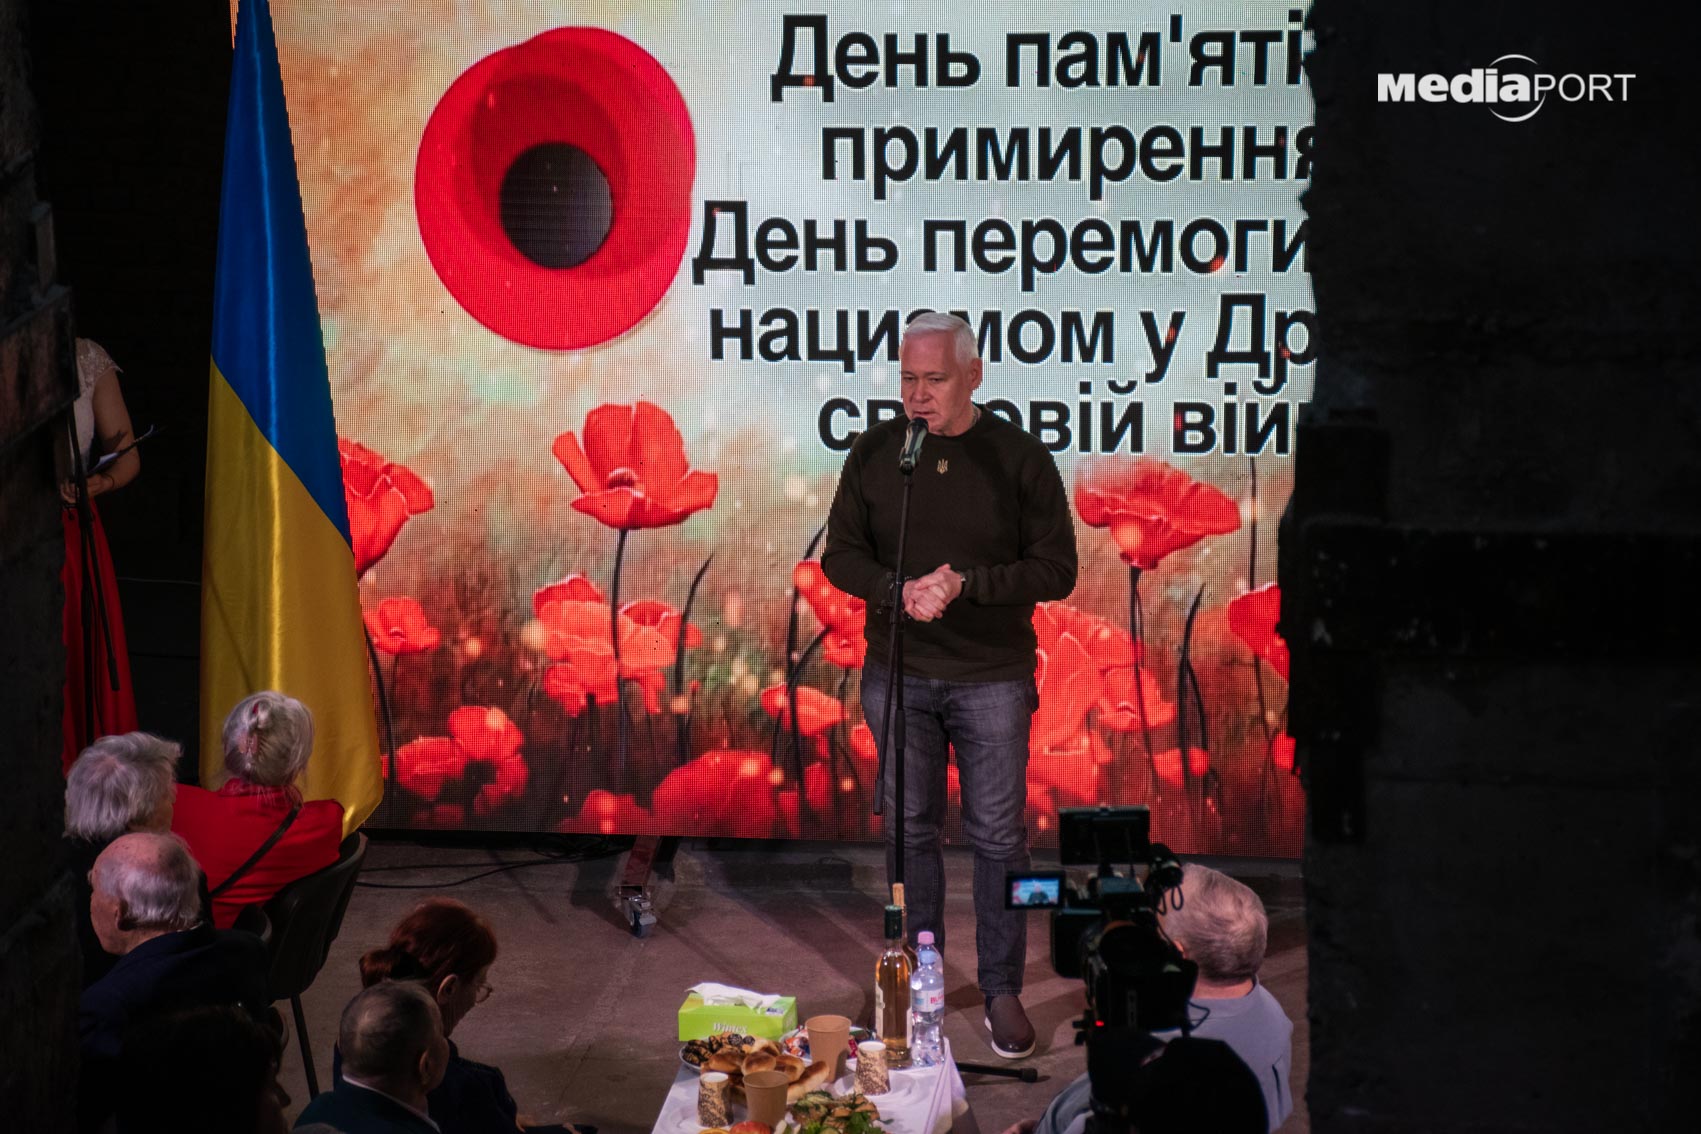 Ветеранів щороку меншає, говорить Харківський міський голова Ігор Терехов. Звертаючись до учасників Другої світової війни, він побажав їм здоров'я